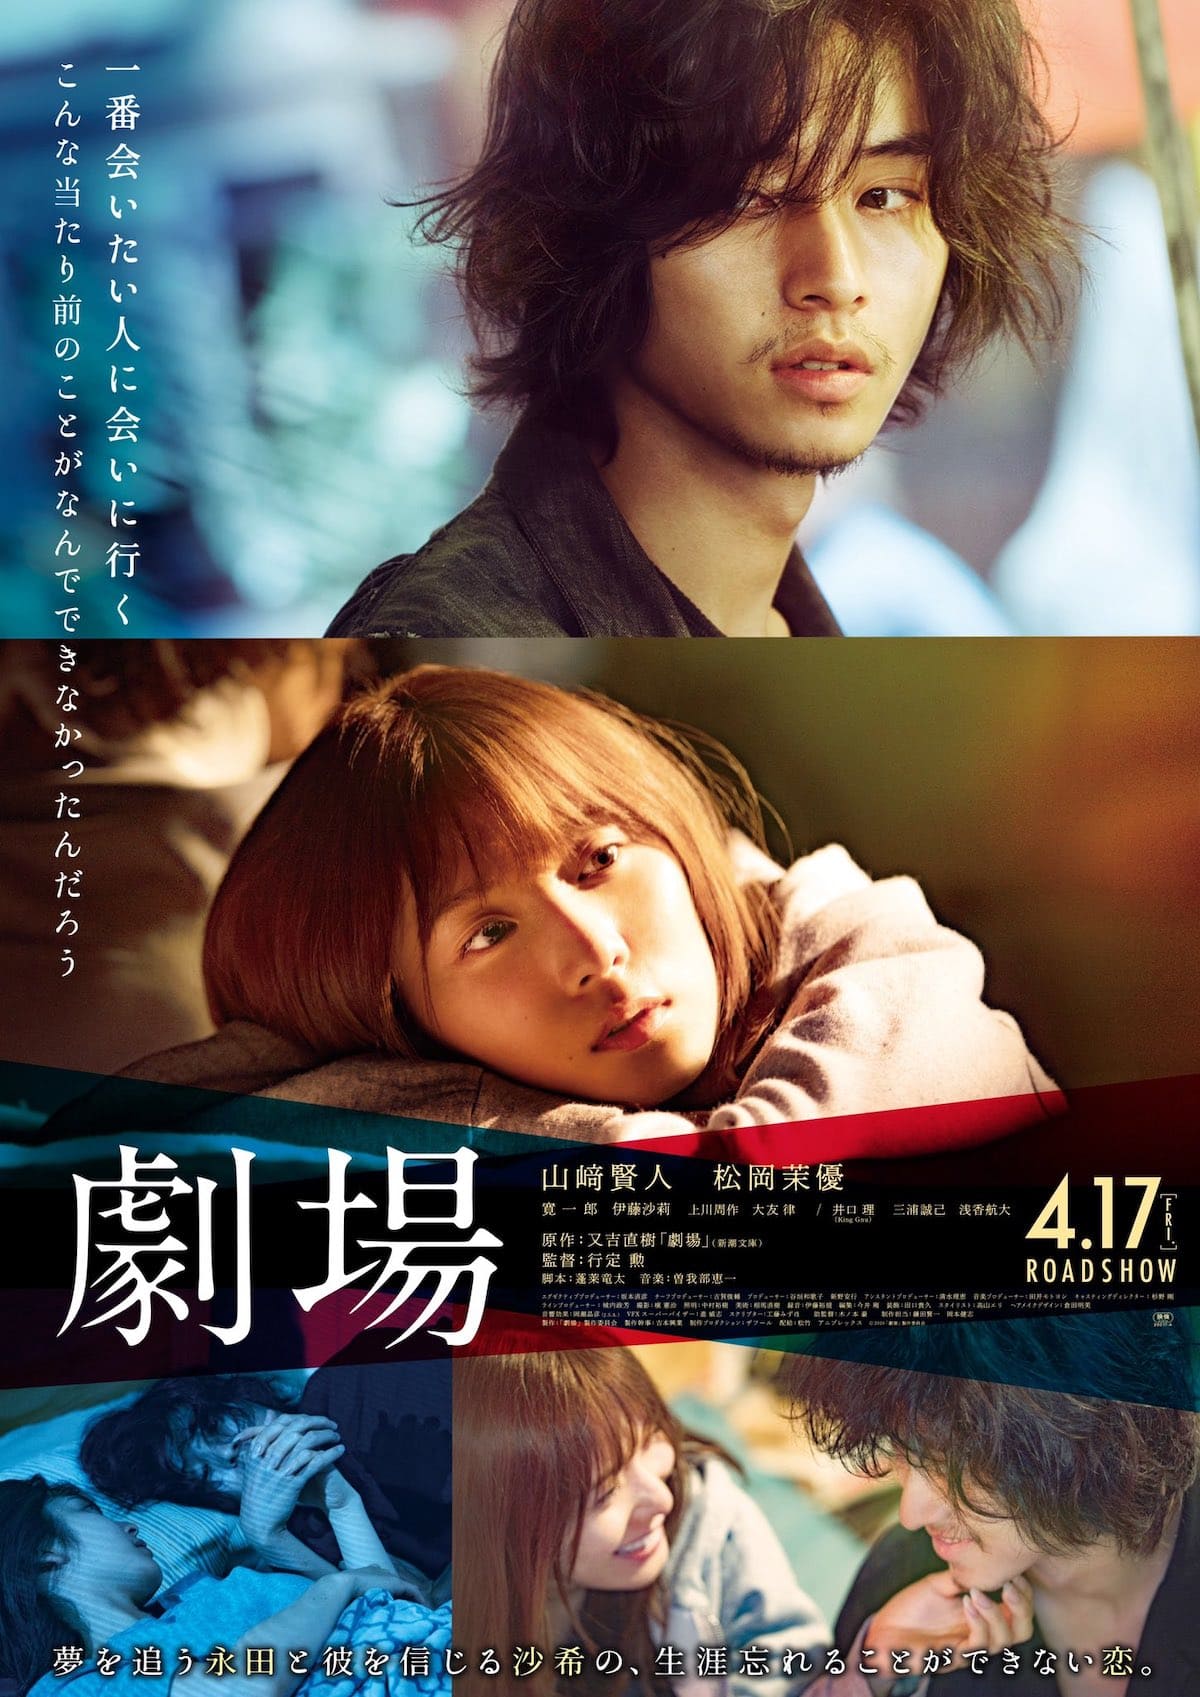 Sinopsis dan Review Film Jepang Theater (2020)